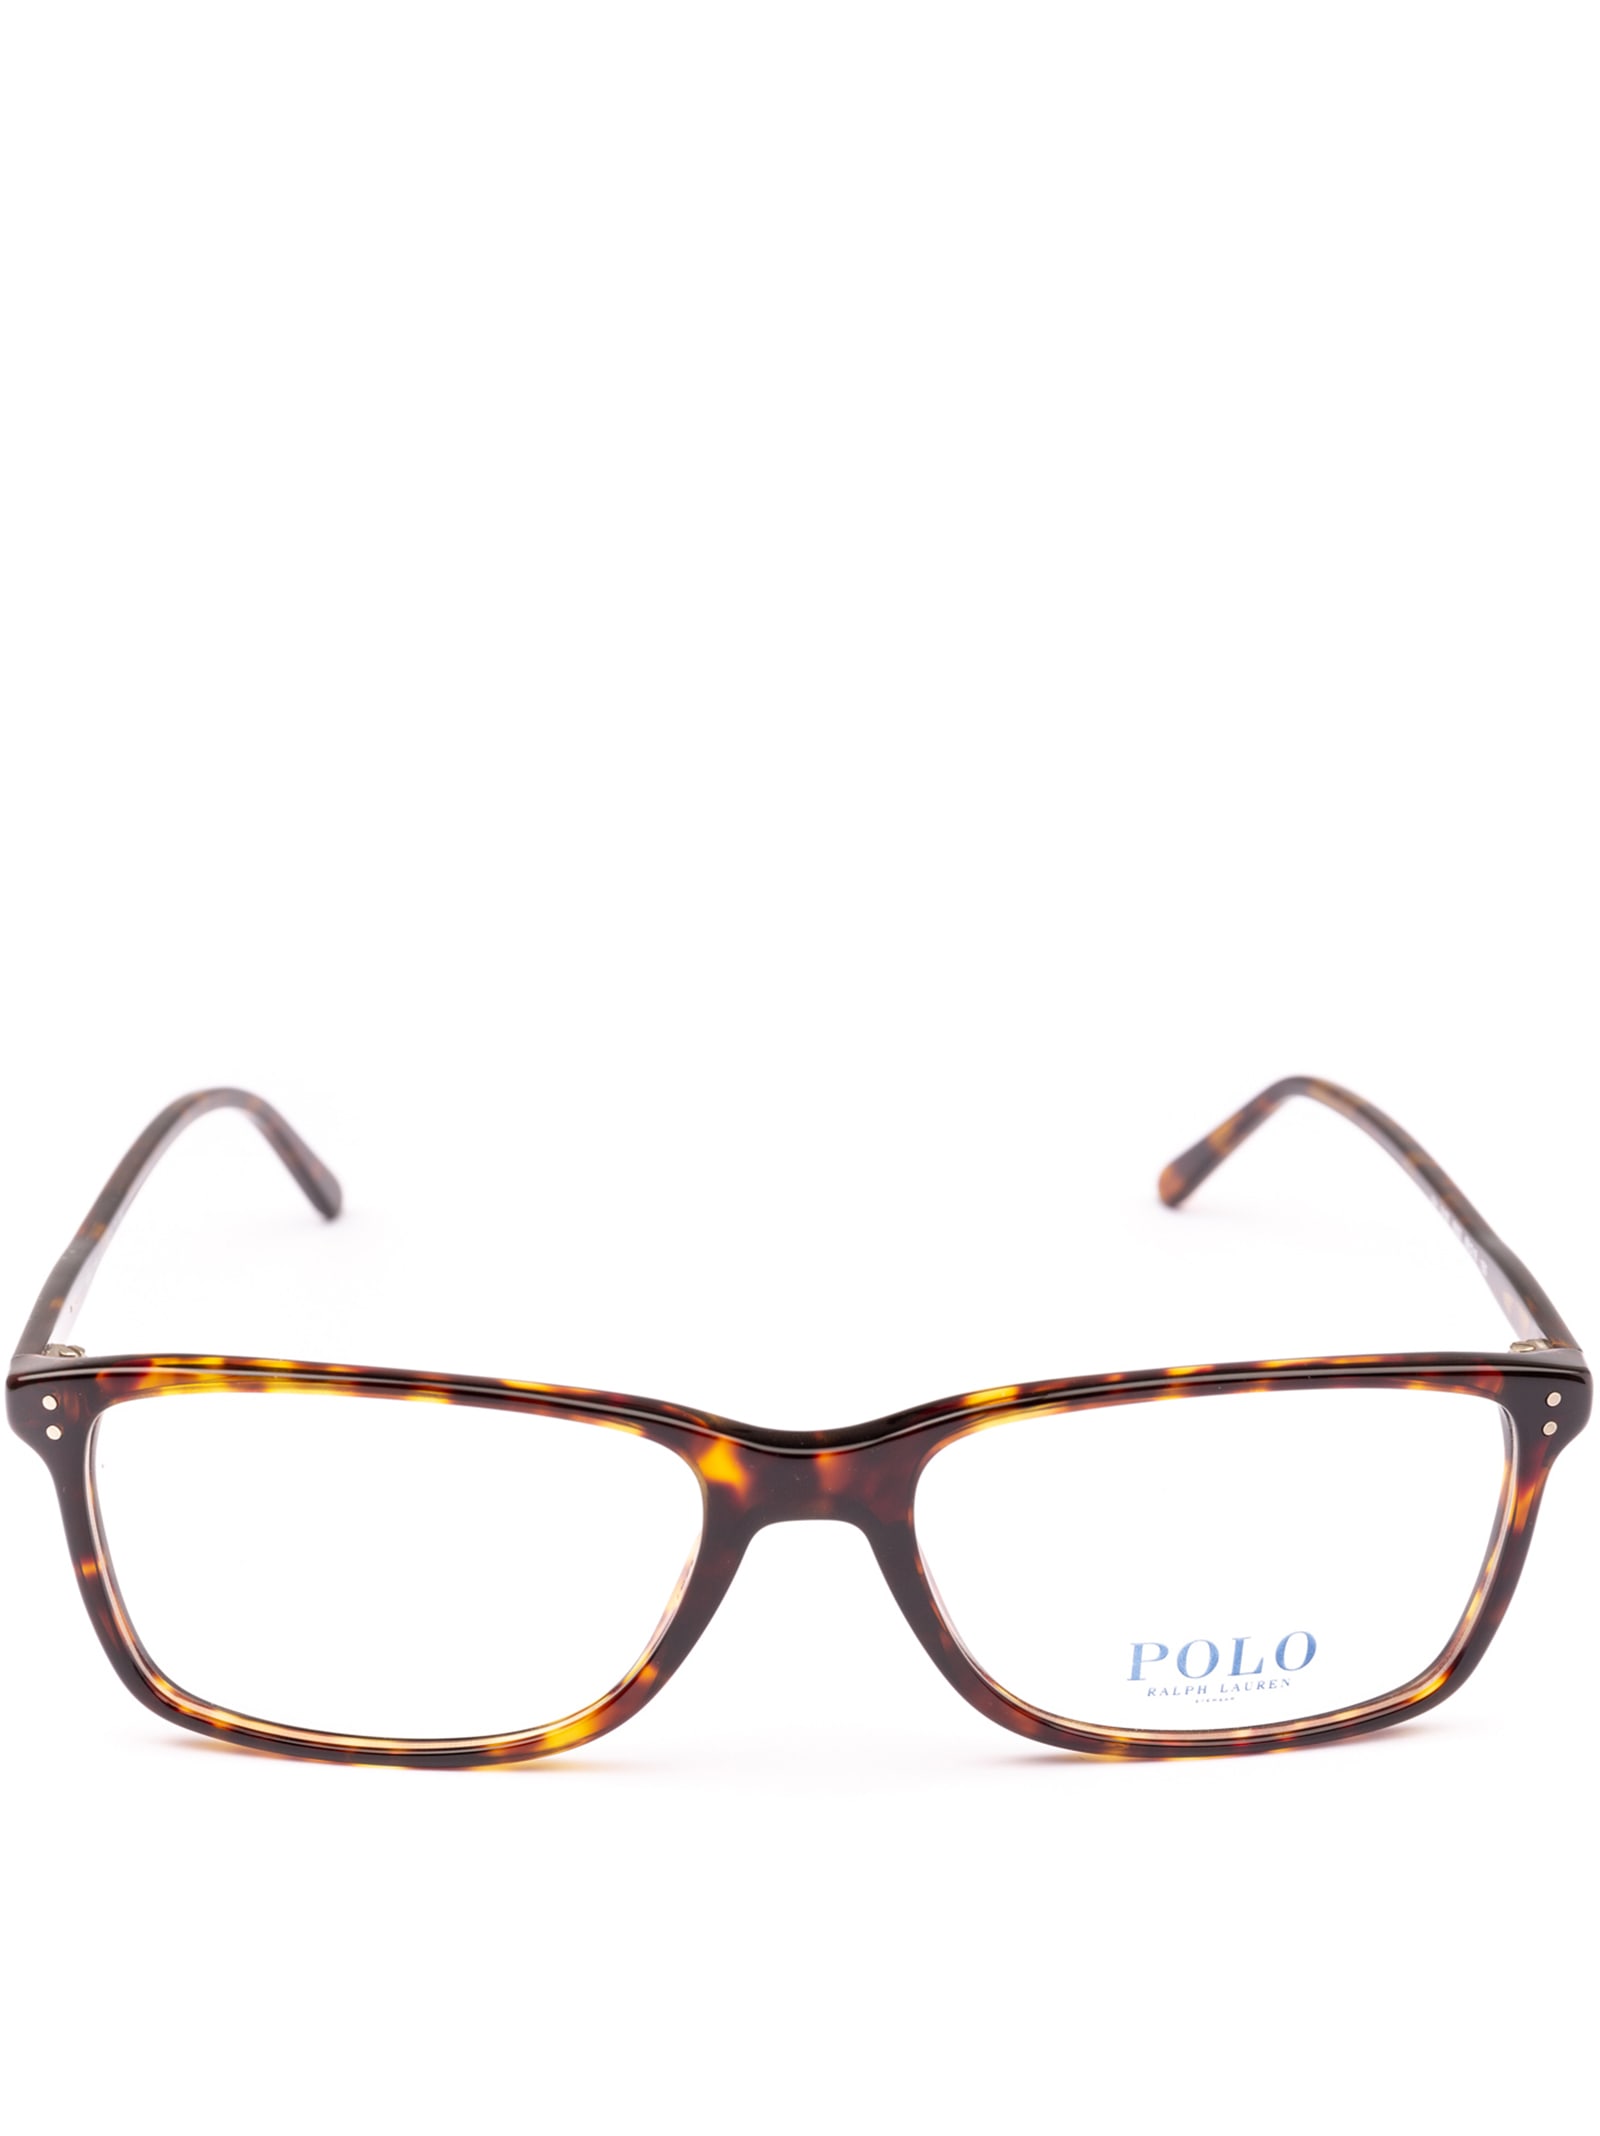 Polo Ralph Lauren Ph2155 5003 Glasses